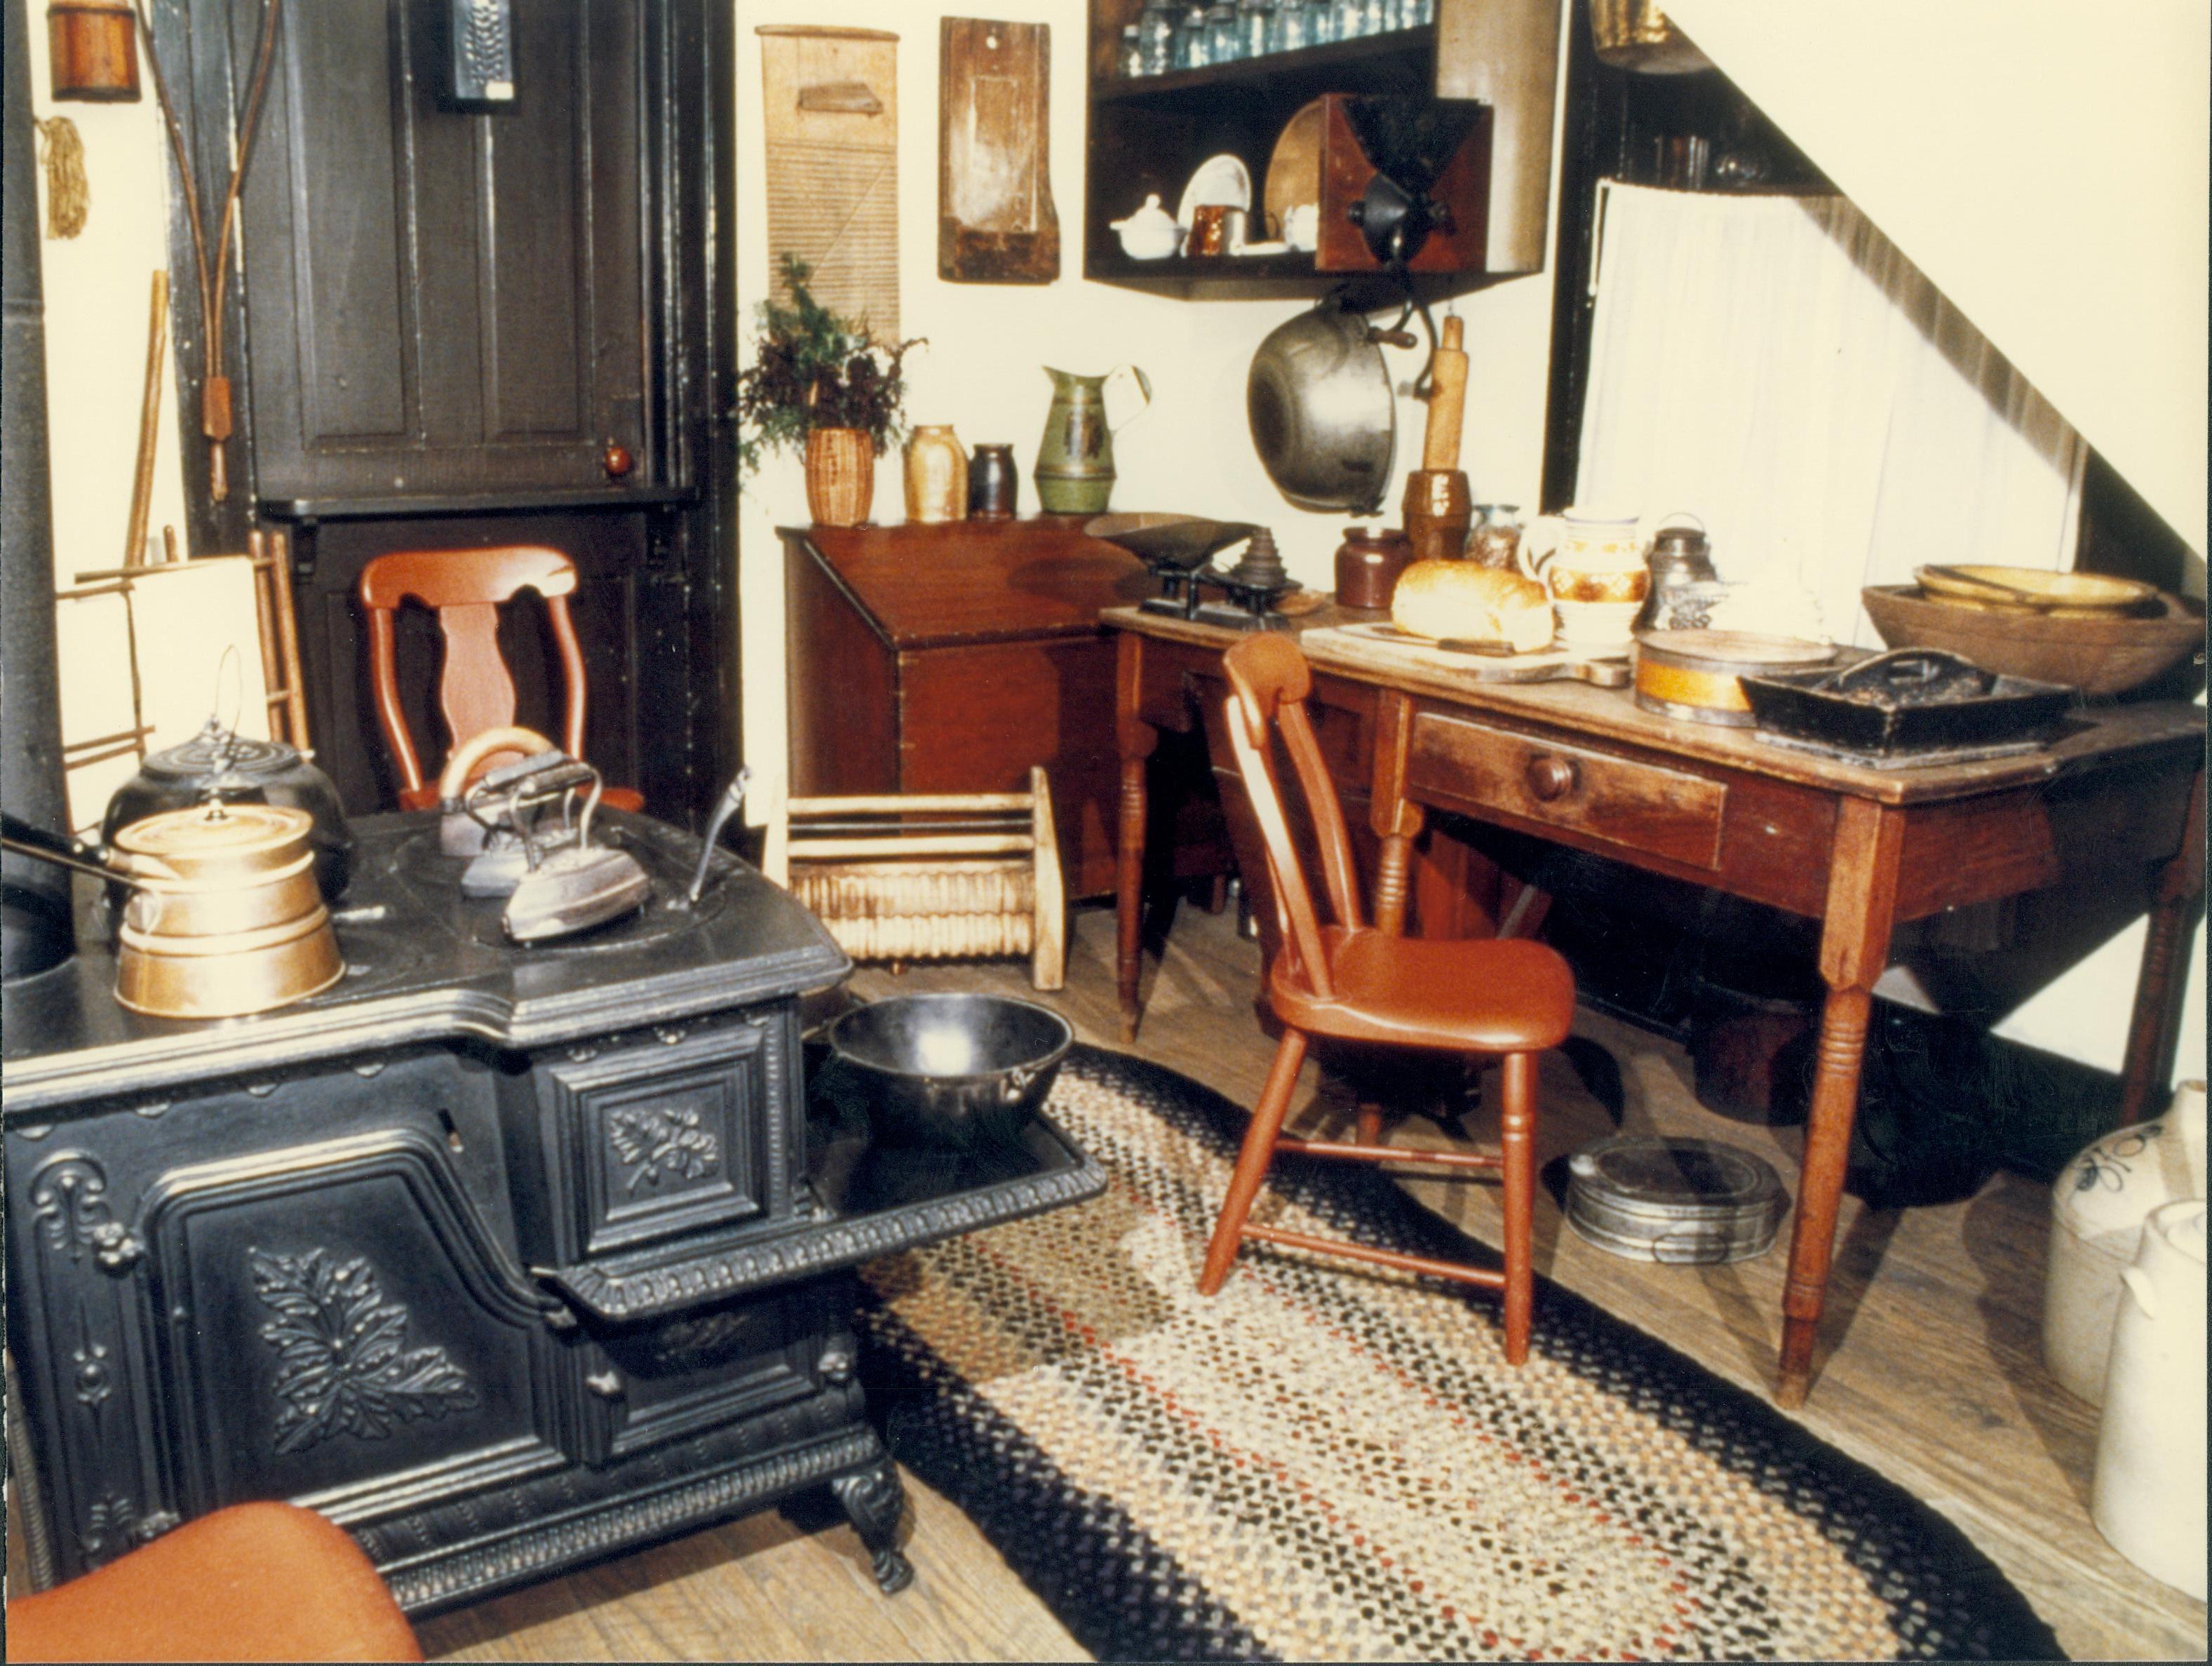 NA Lincoln, Home, Kitchen, artifacts, stove, utensils